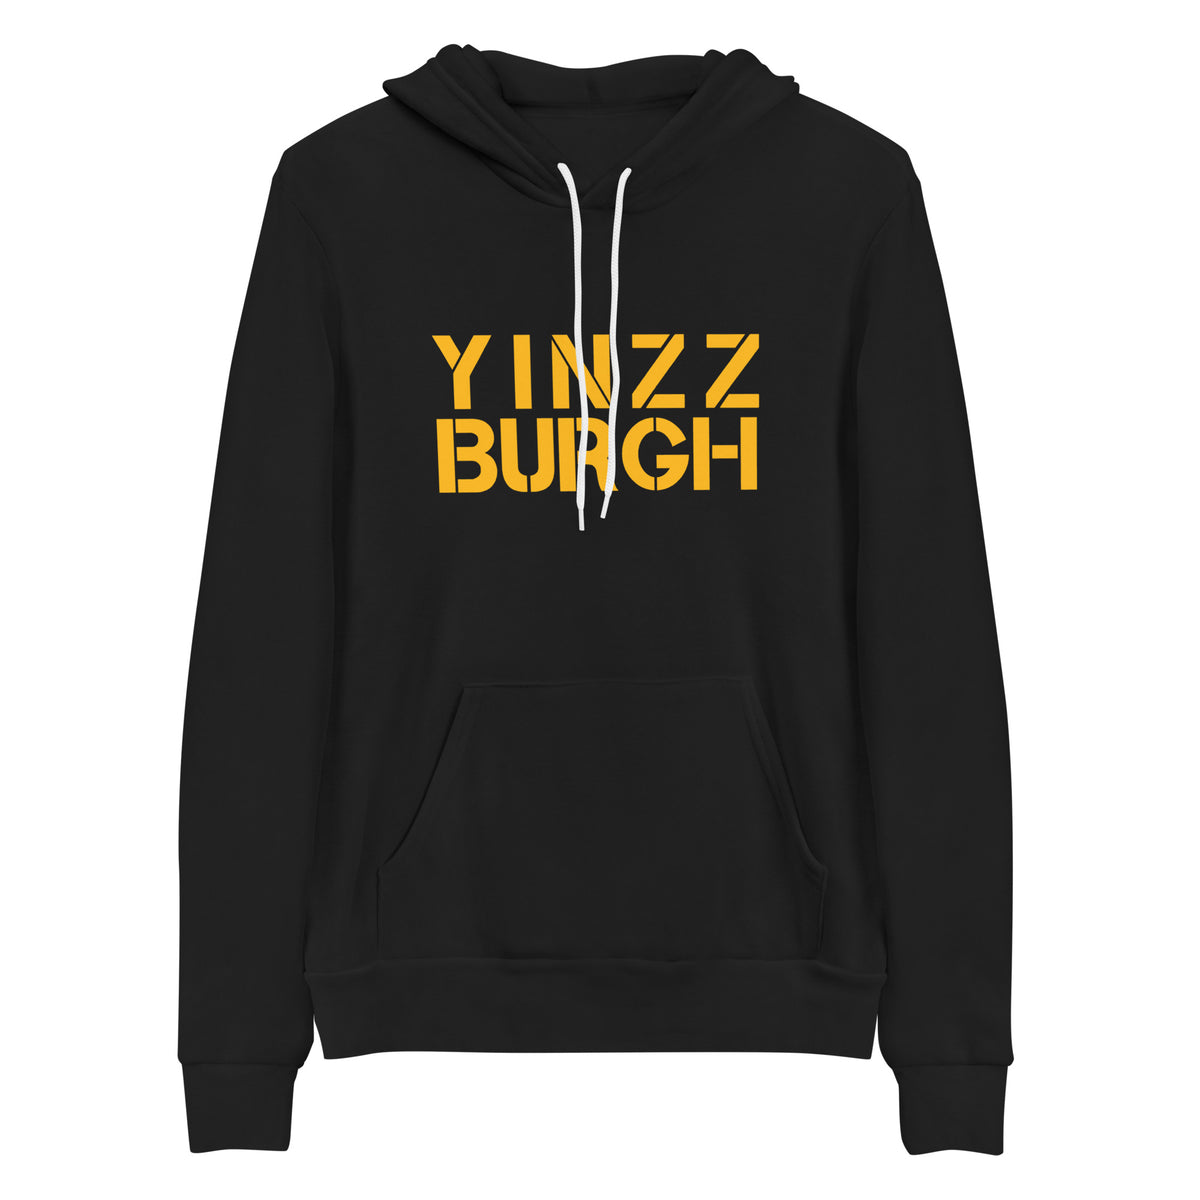 YinzzBurgh | YINZZ Premium Hoodie